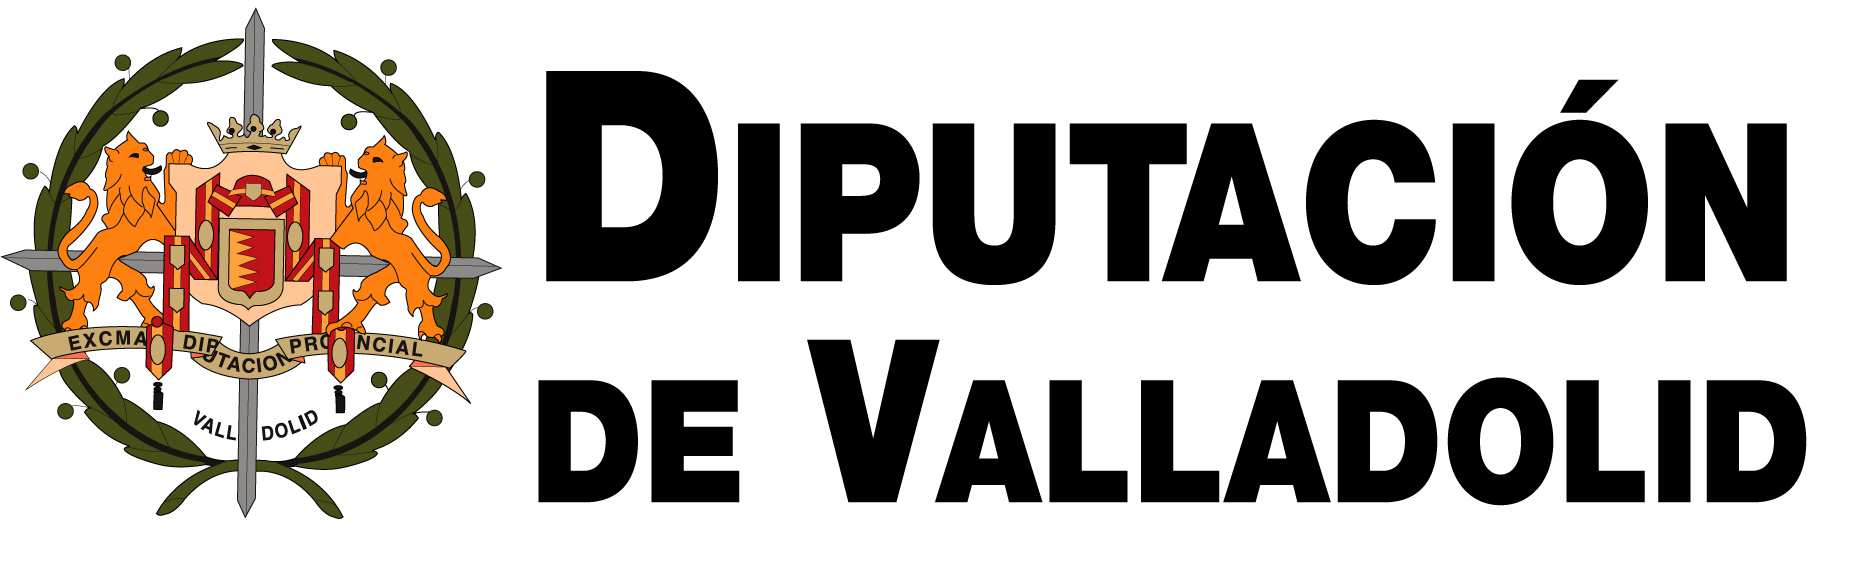 MISIÓN COMERCIAL A PUERTO RICO 13 al 17 Septiembre 2015 CONVOCATORIA Dentro del Programa de Apoyo a la Internacionalización de la Provincia de Valladolid liderado por la Diputación Provincial de